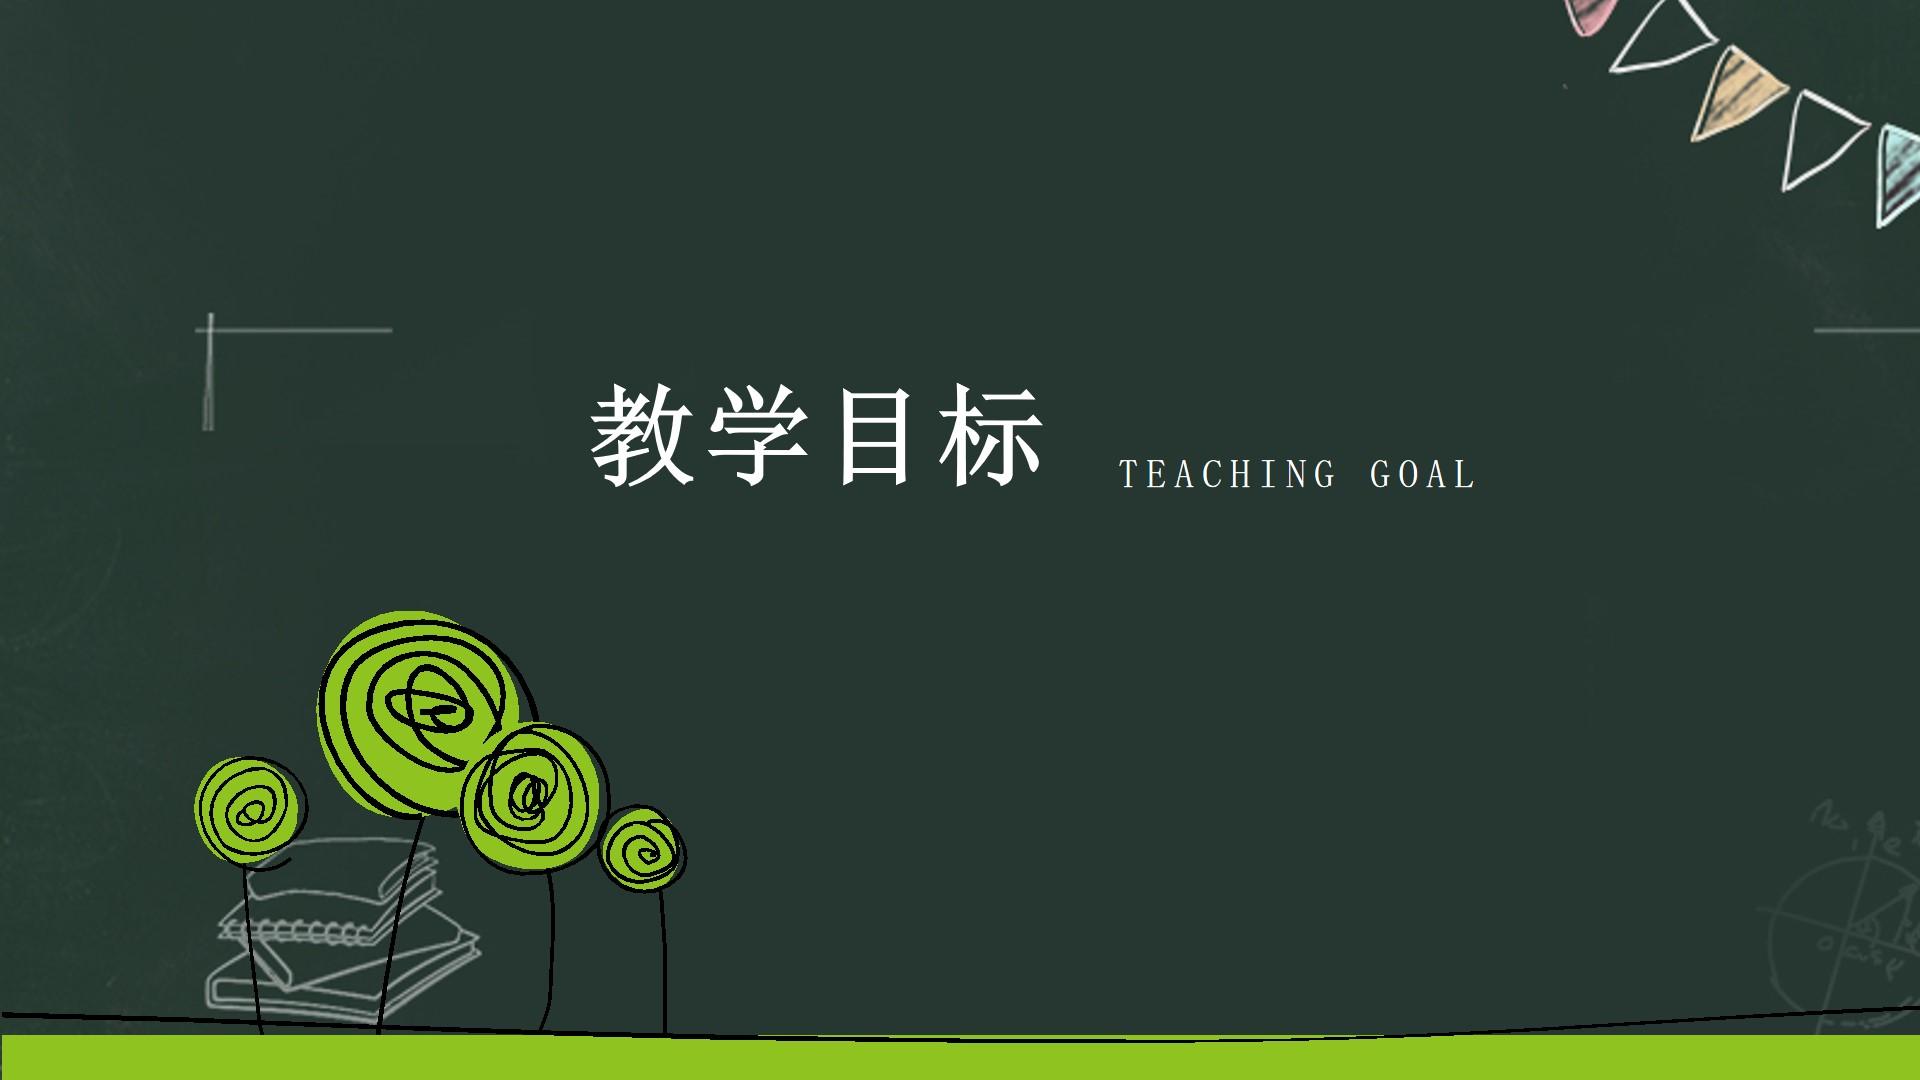 教育教学绿色黑色白色简洁突出teaching goal云素材PPT模板1672662512399